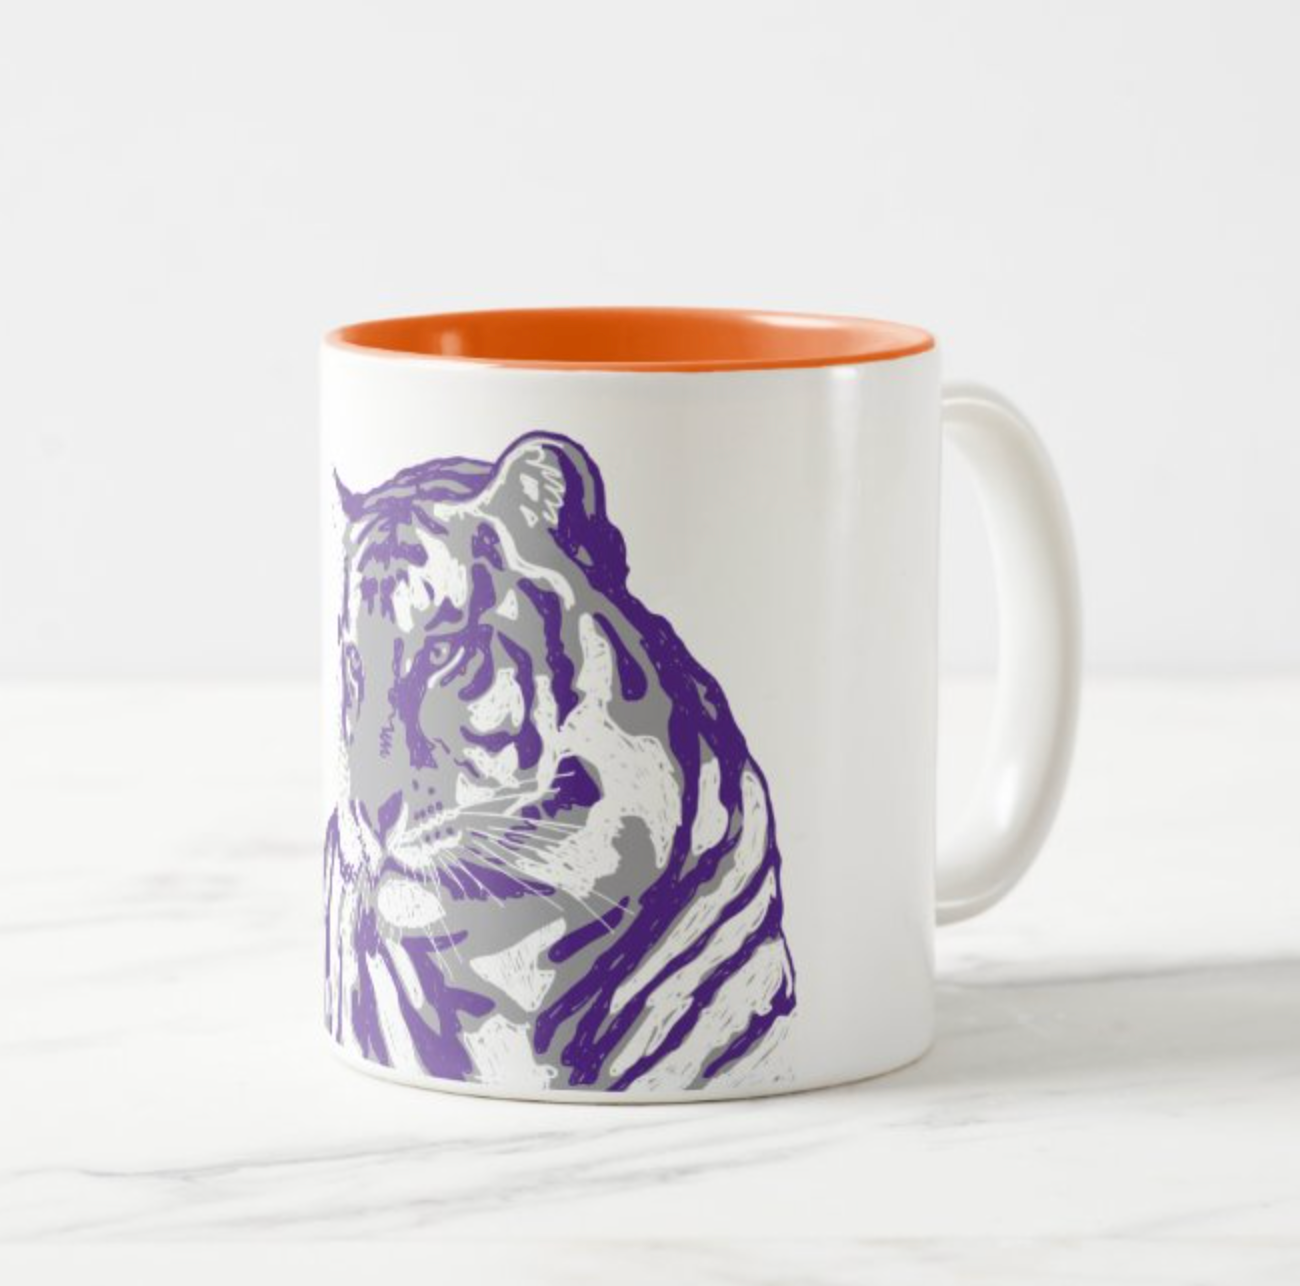 Staring Tiger Mug with Color Inside